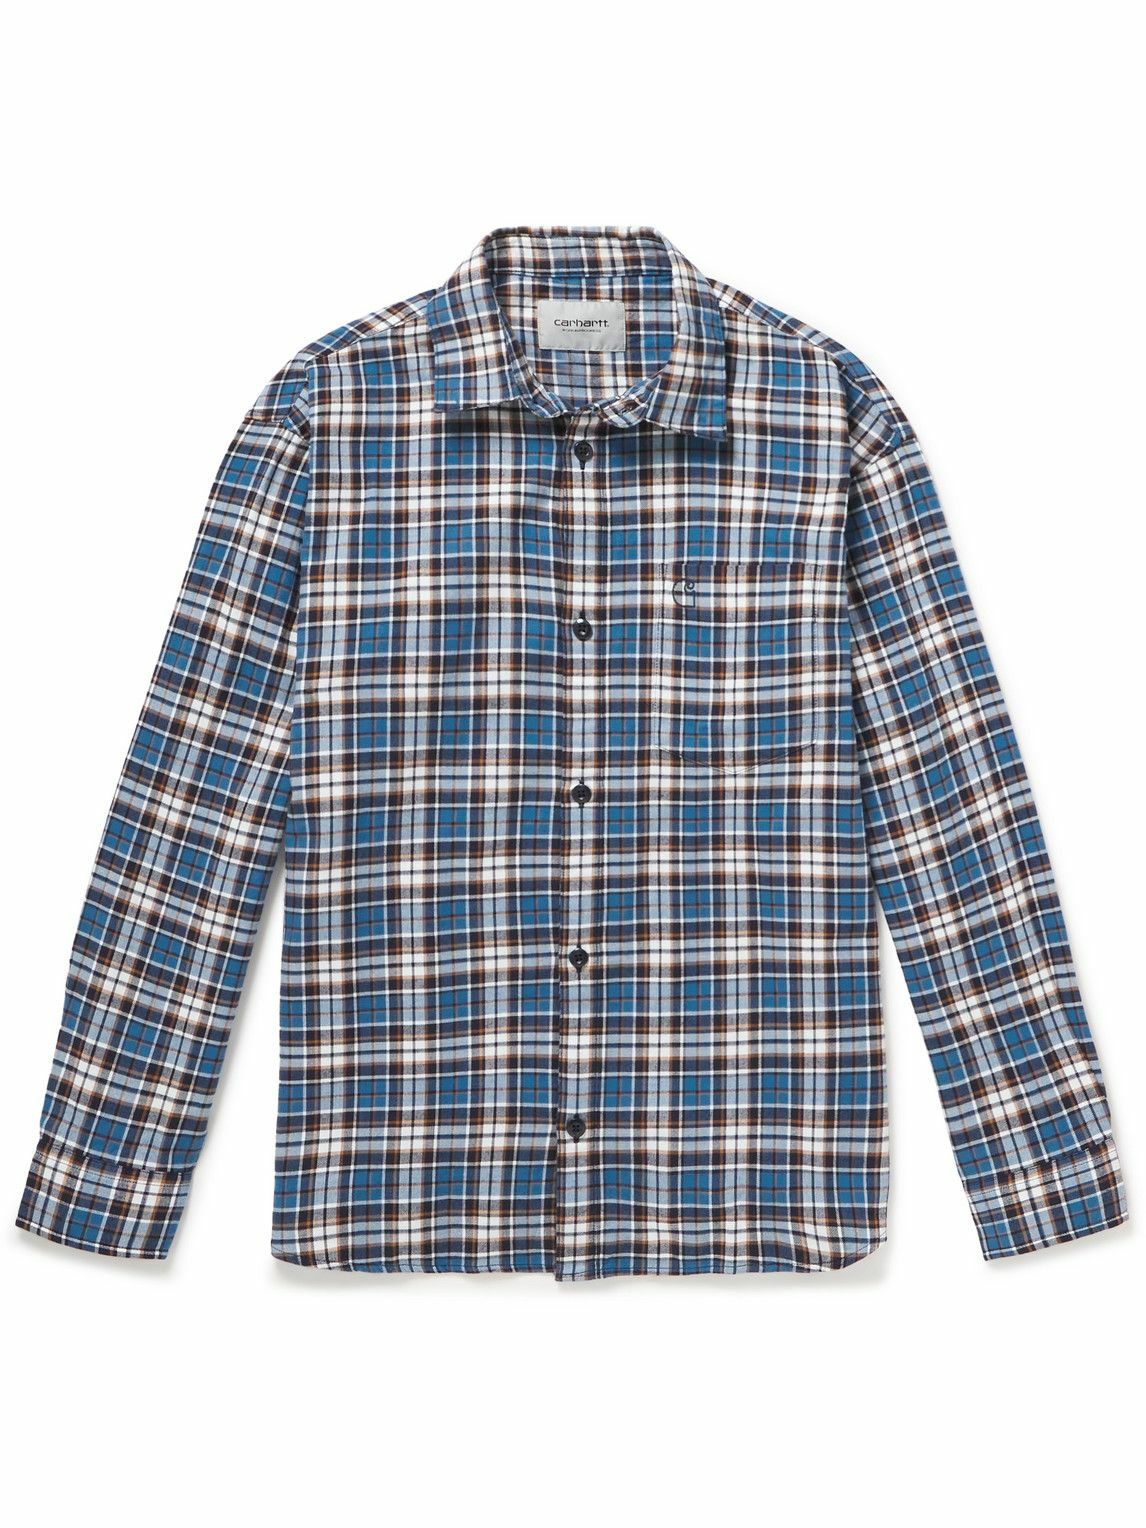 Carhartt WIP - Yuma Checked Cotton-Flannel Shirt - Blue Carhartt WIP